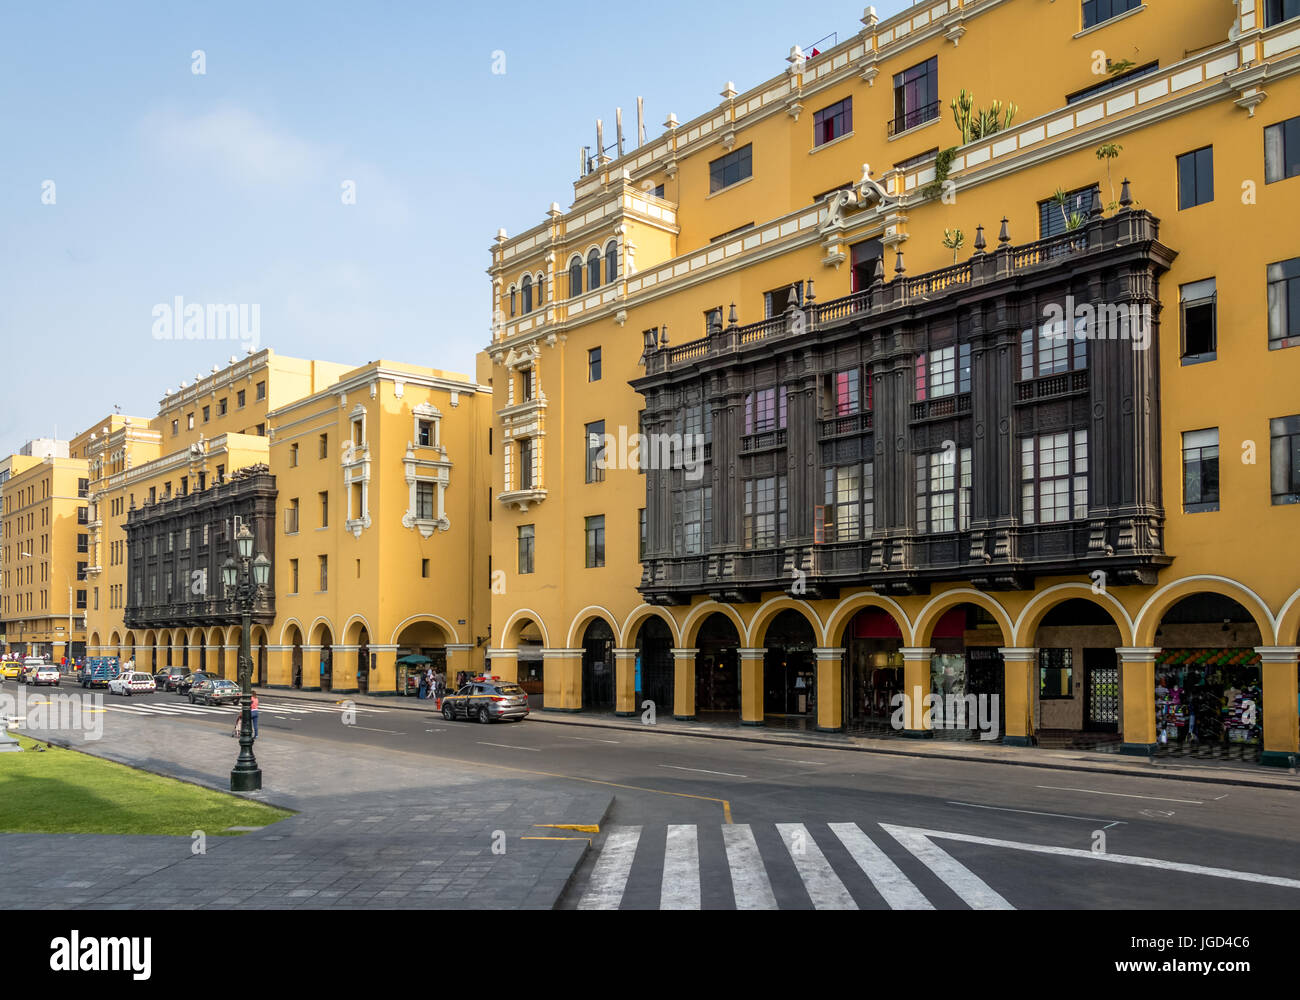 Bâtiment jaune colonial avec balcon dans le centre ville près de la Plaza Mayor - Lima, Pérou Banque D'Images